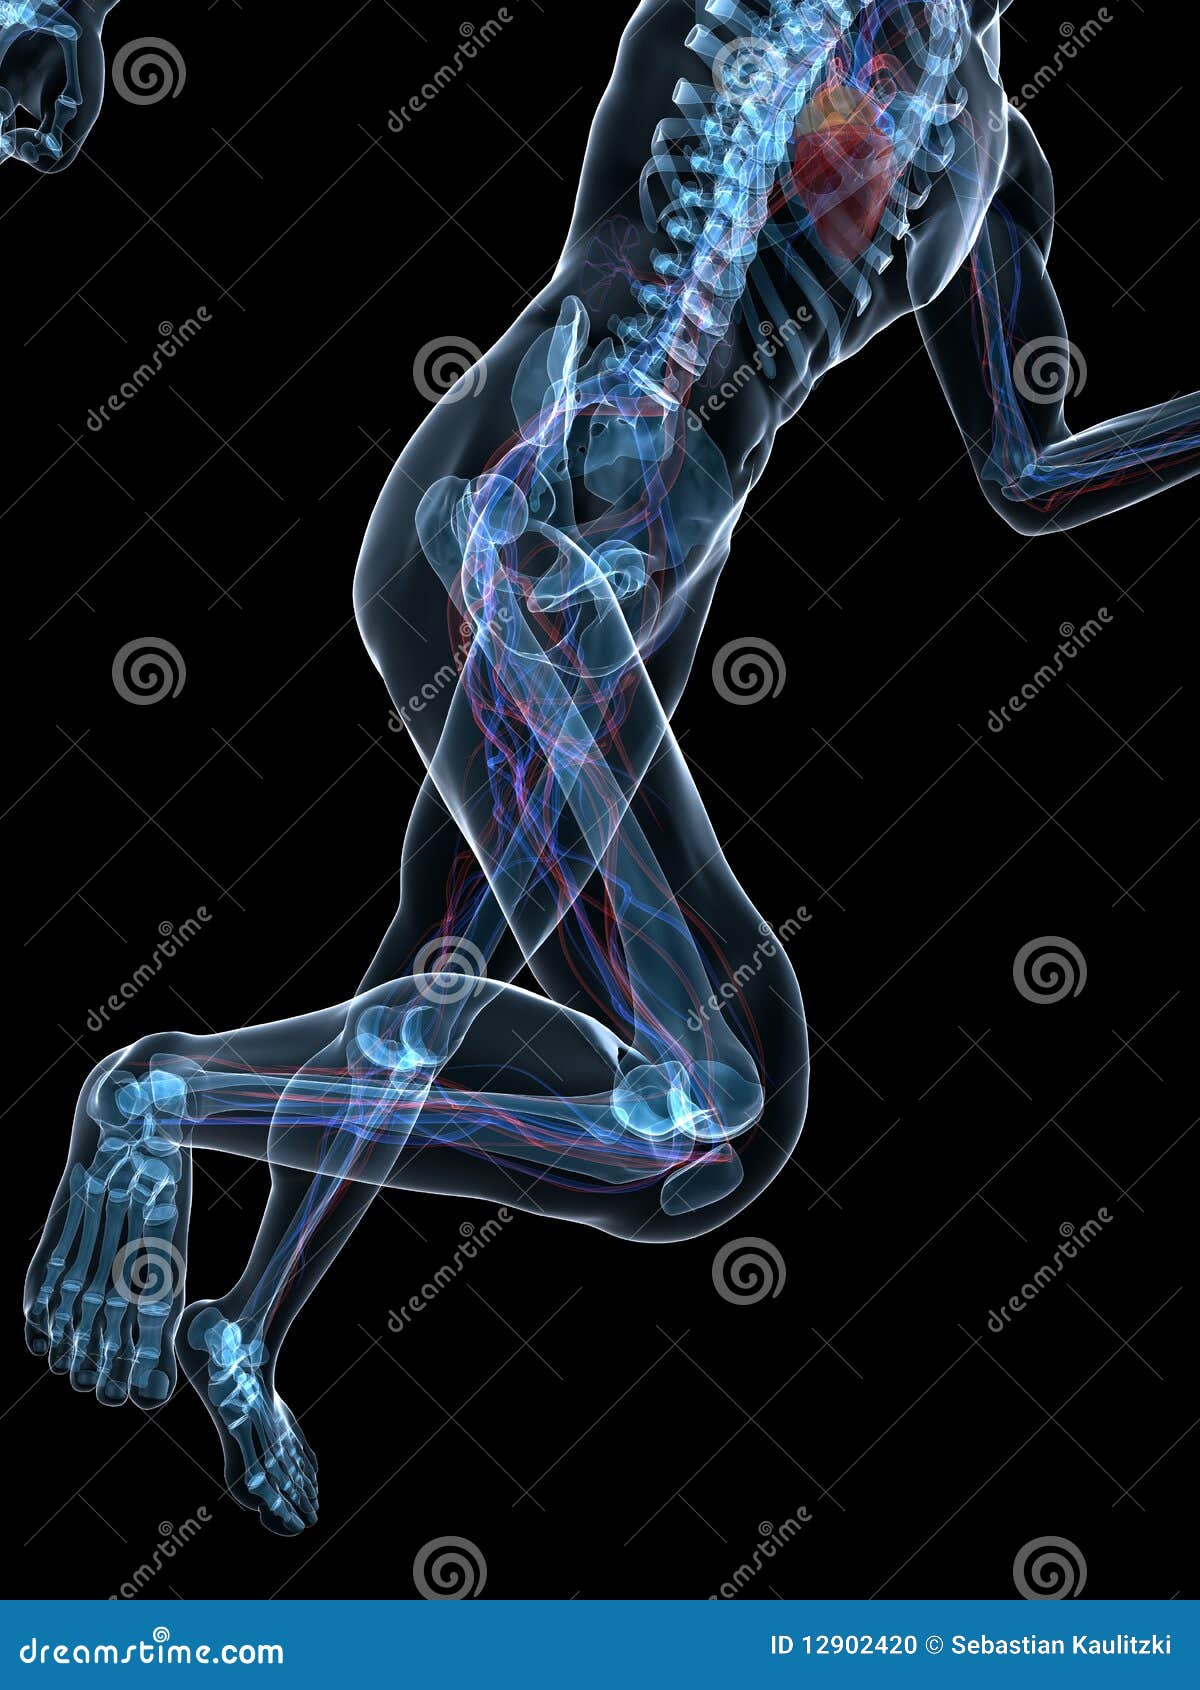 running skeleton - vascular